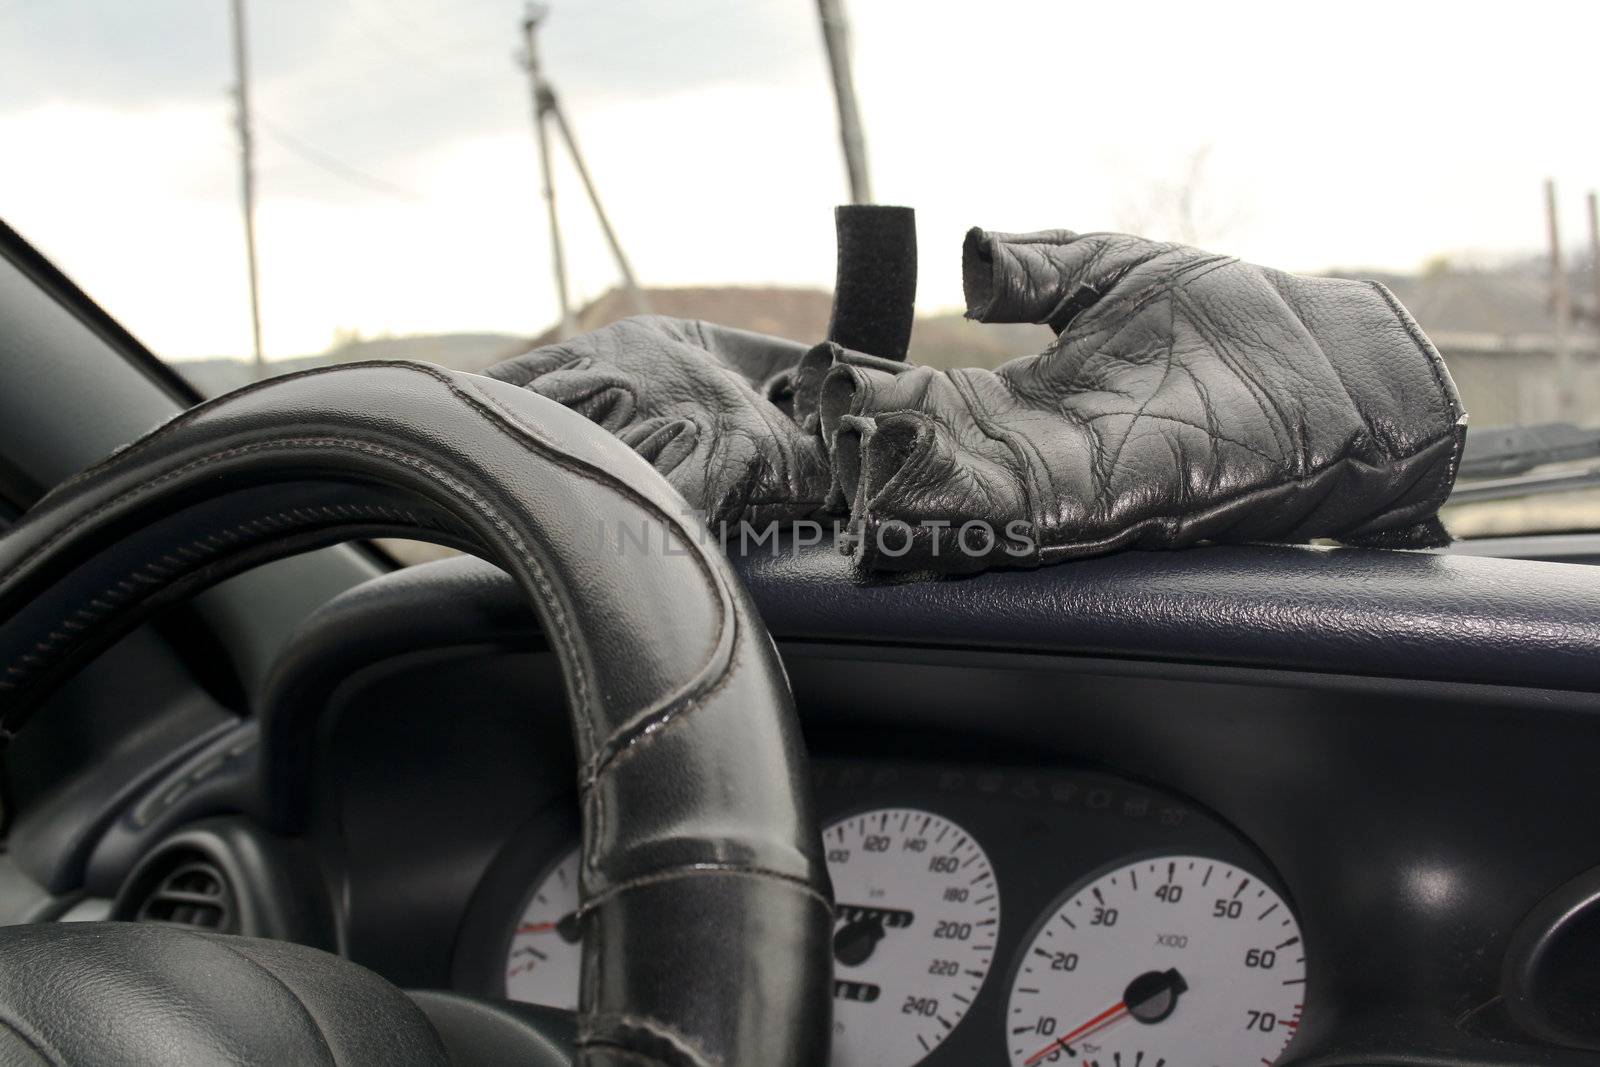 Leather gloves in torpedo cars, steerinf wheel, speedometer